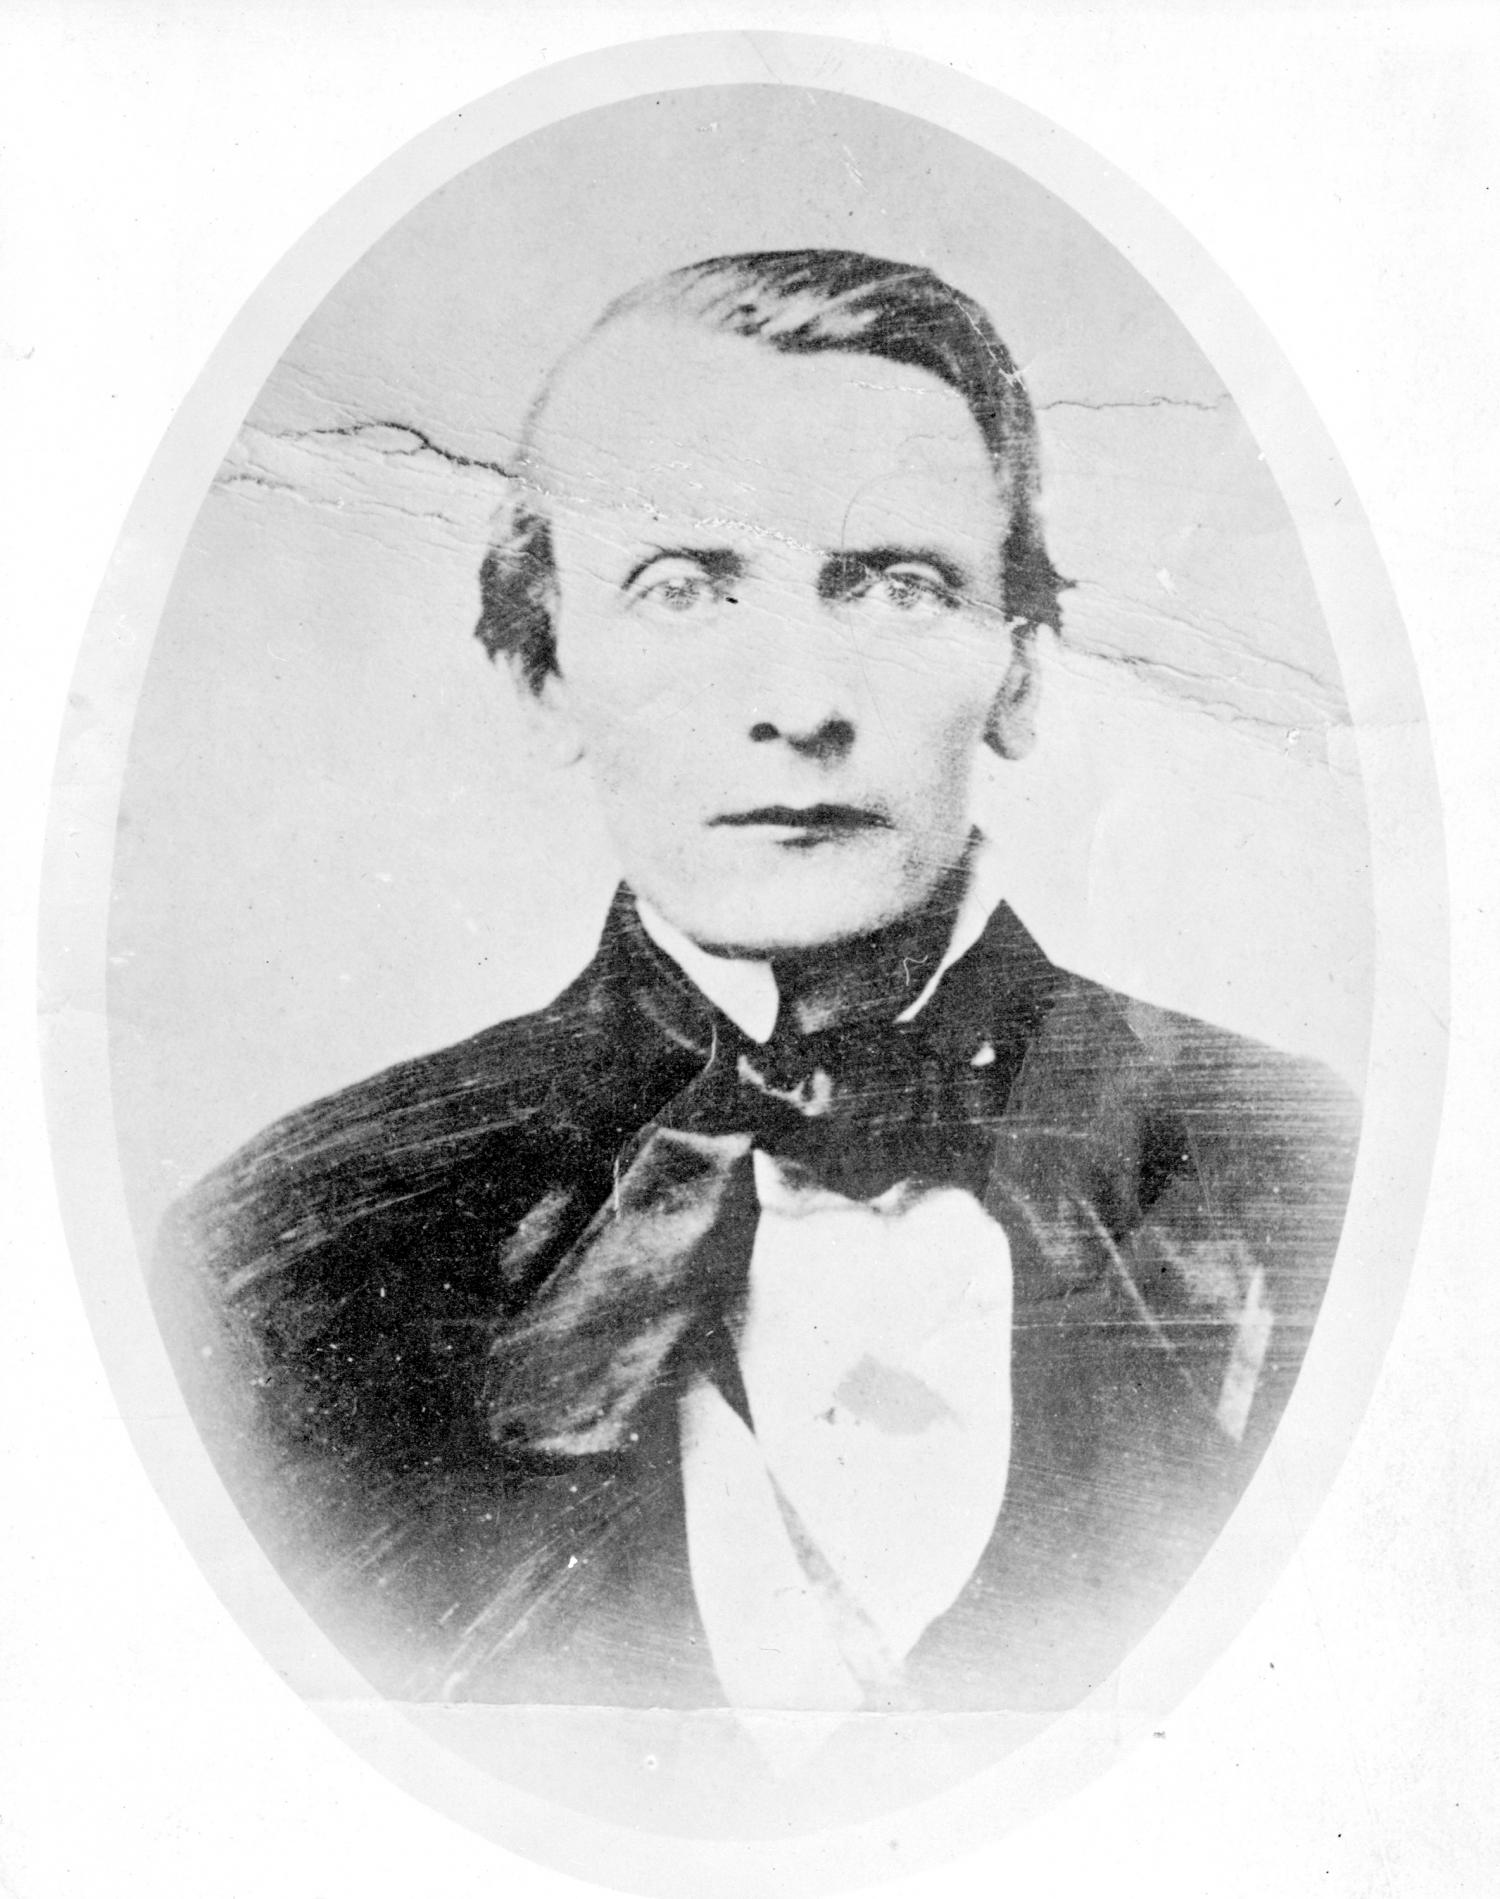 Photo of a young Robert Dunsmuir